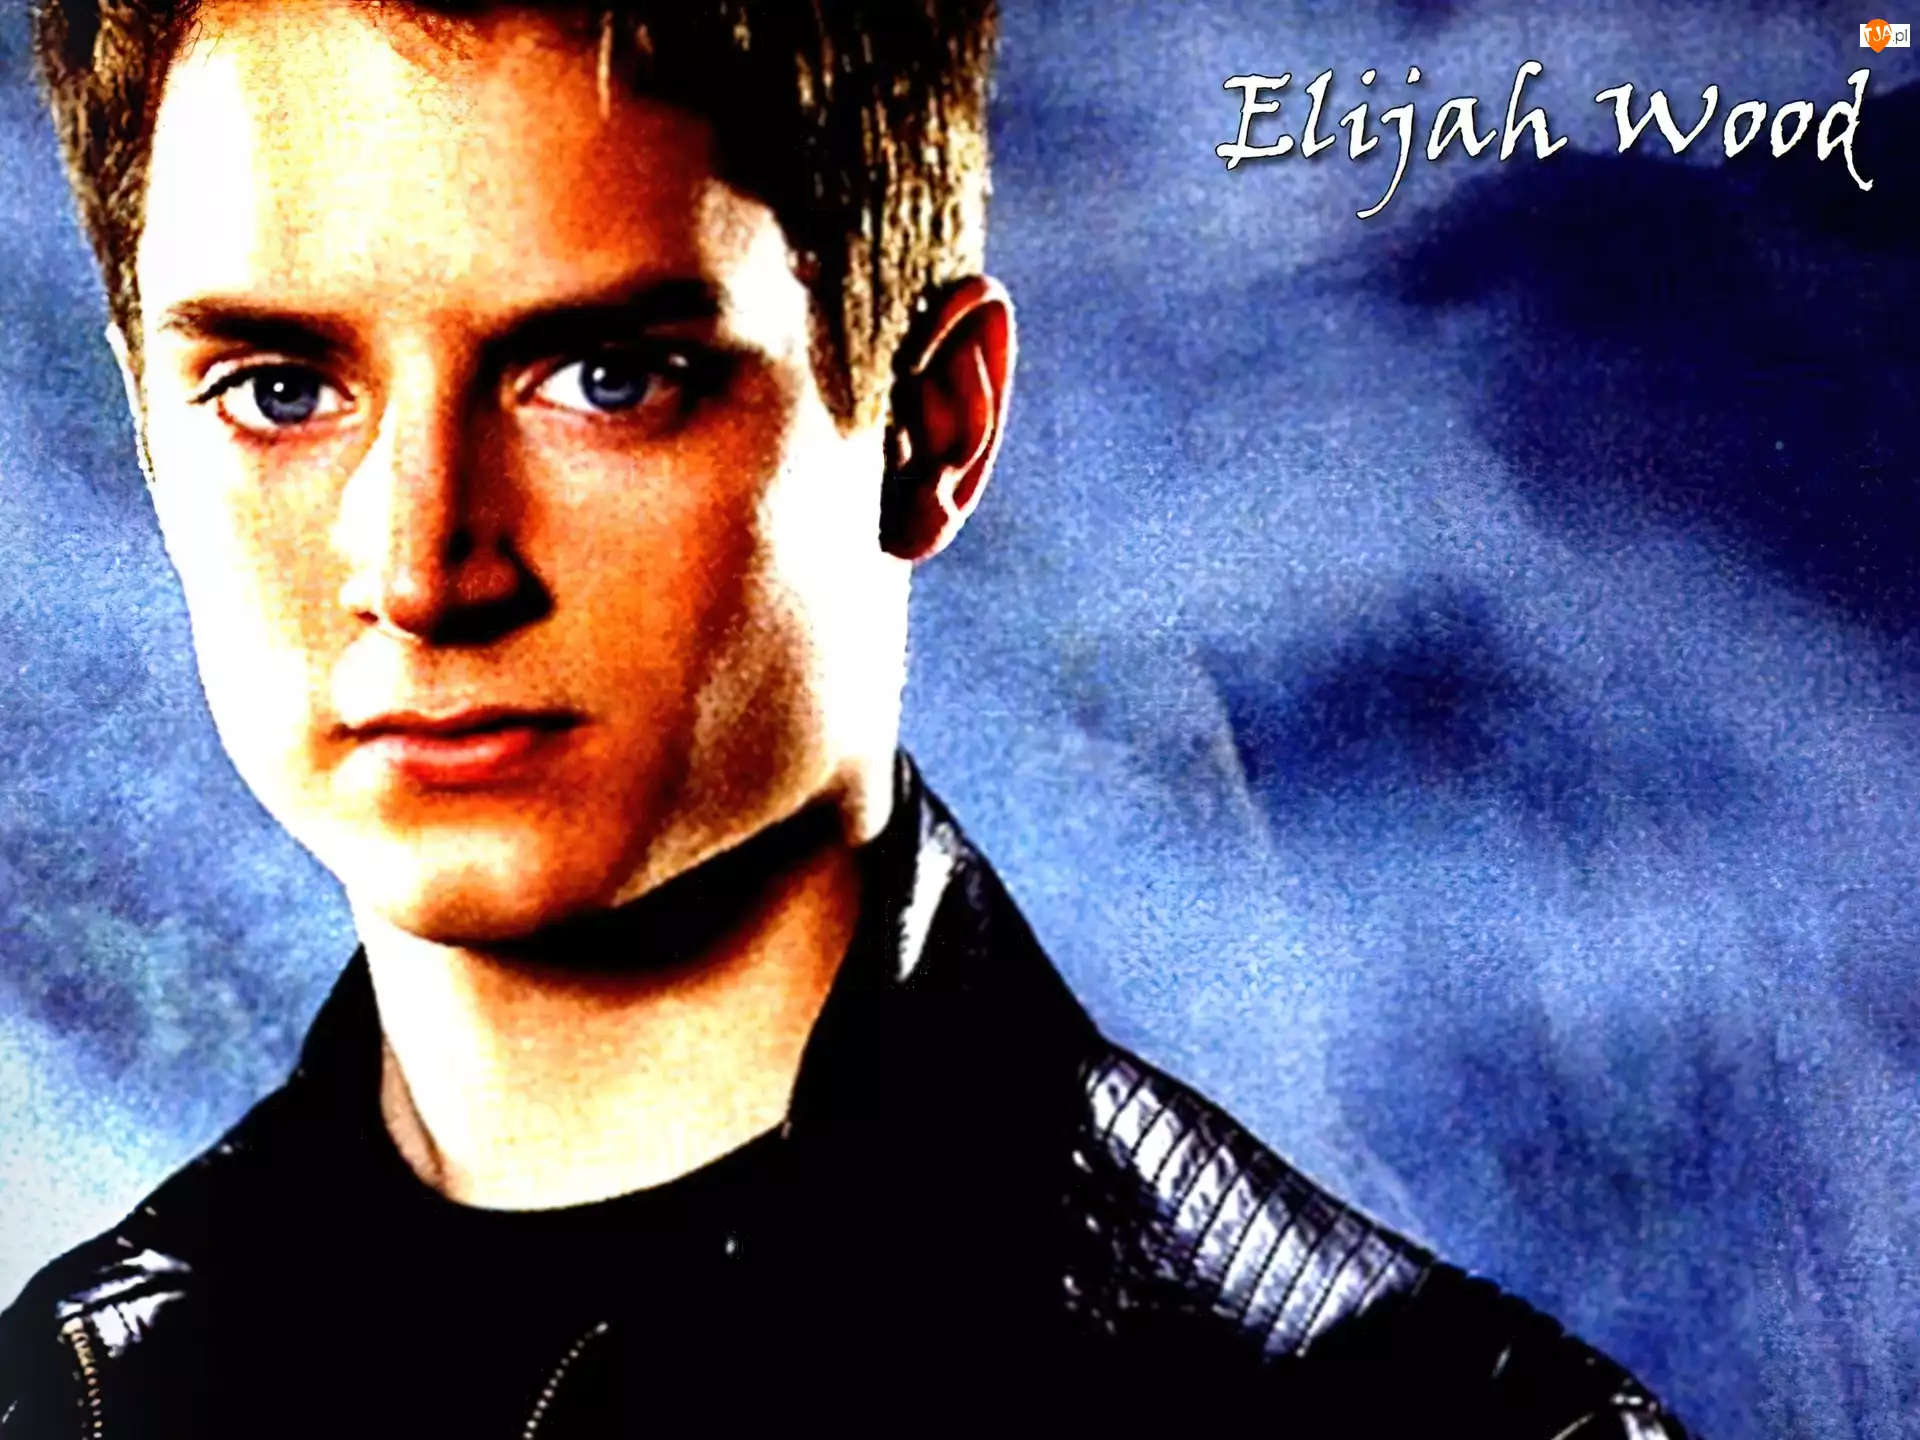 jasne włosy, Elijah Wood, niebieskie oczy